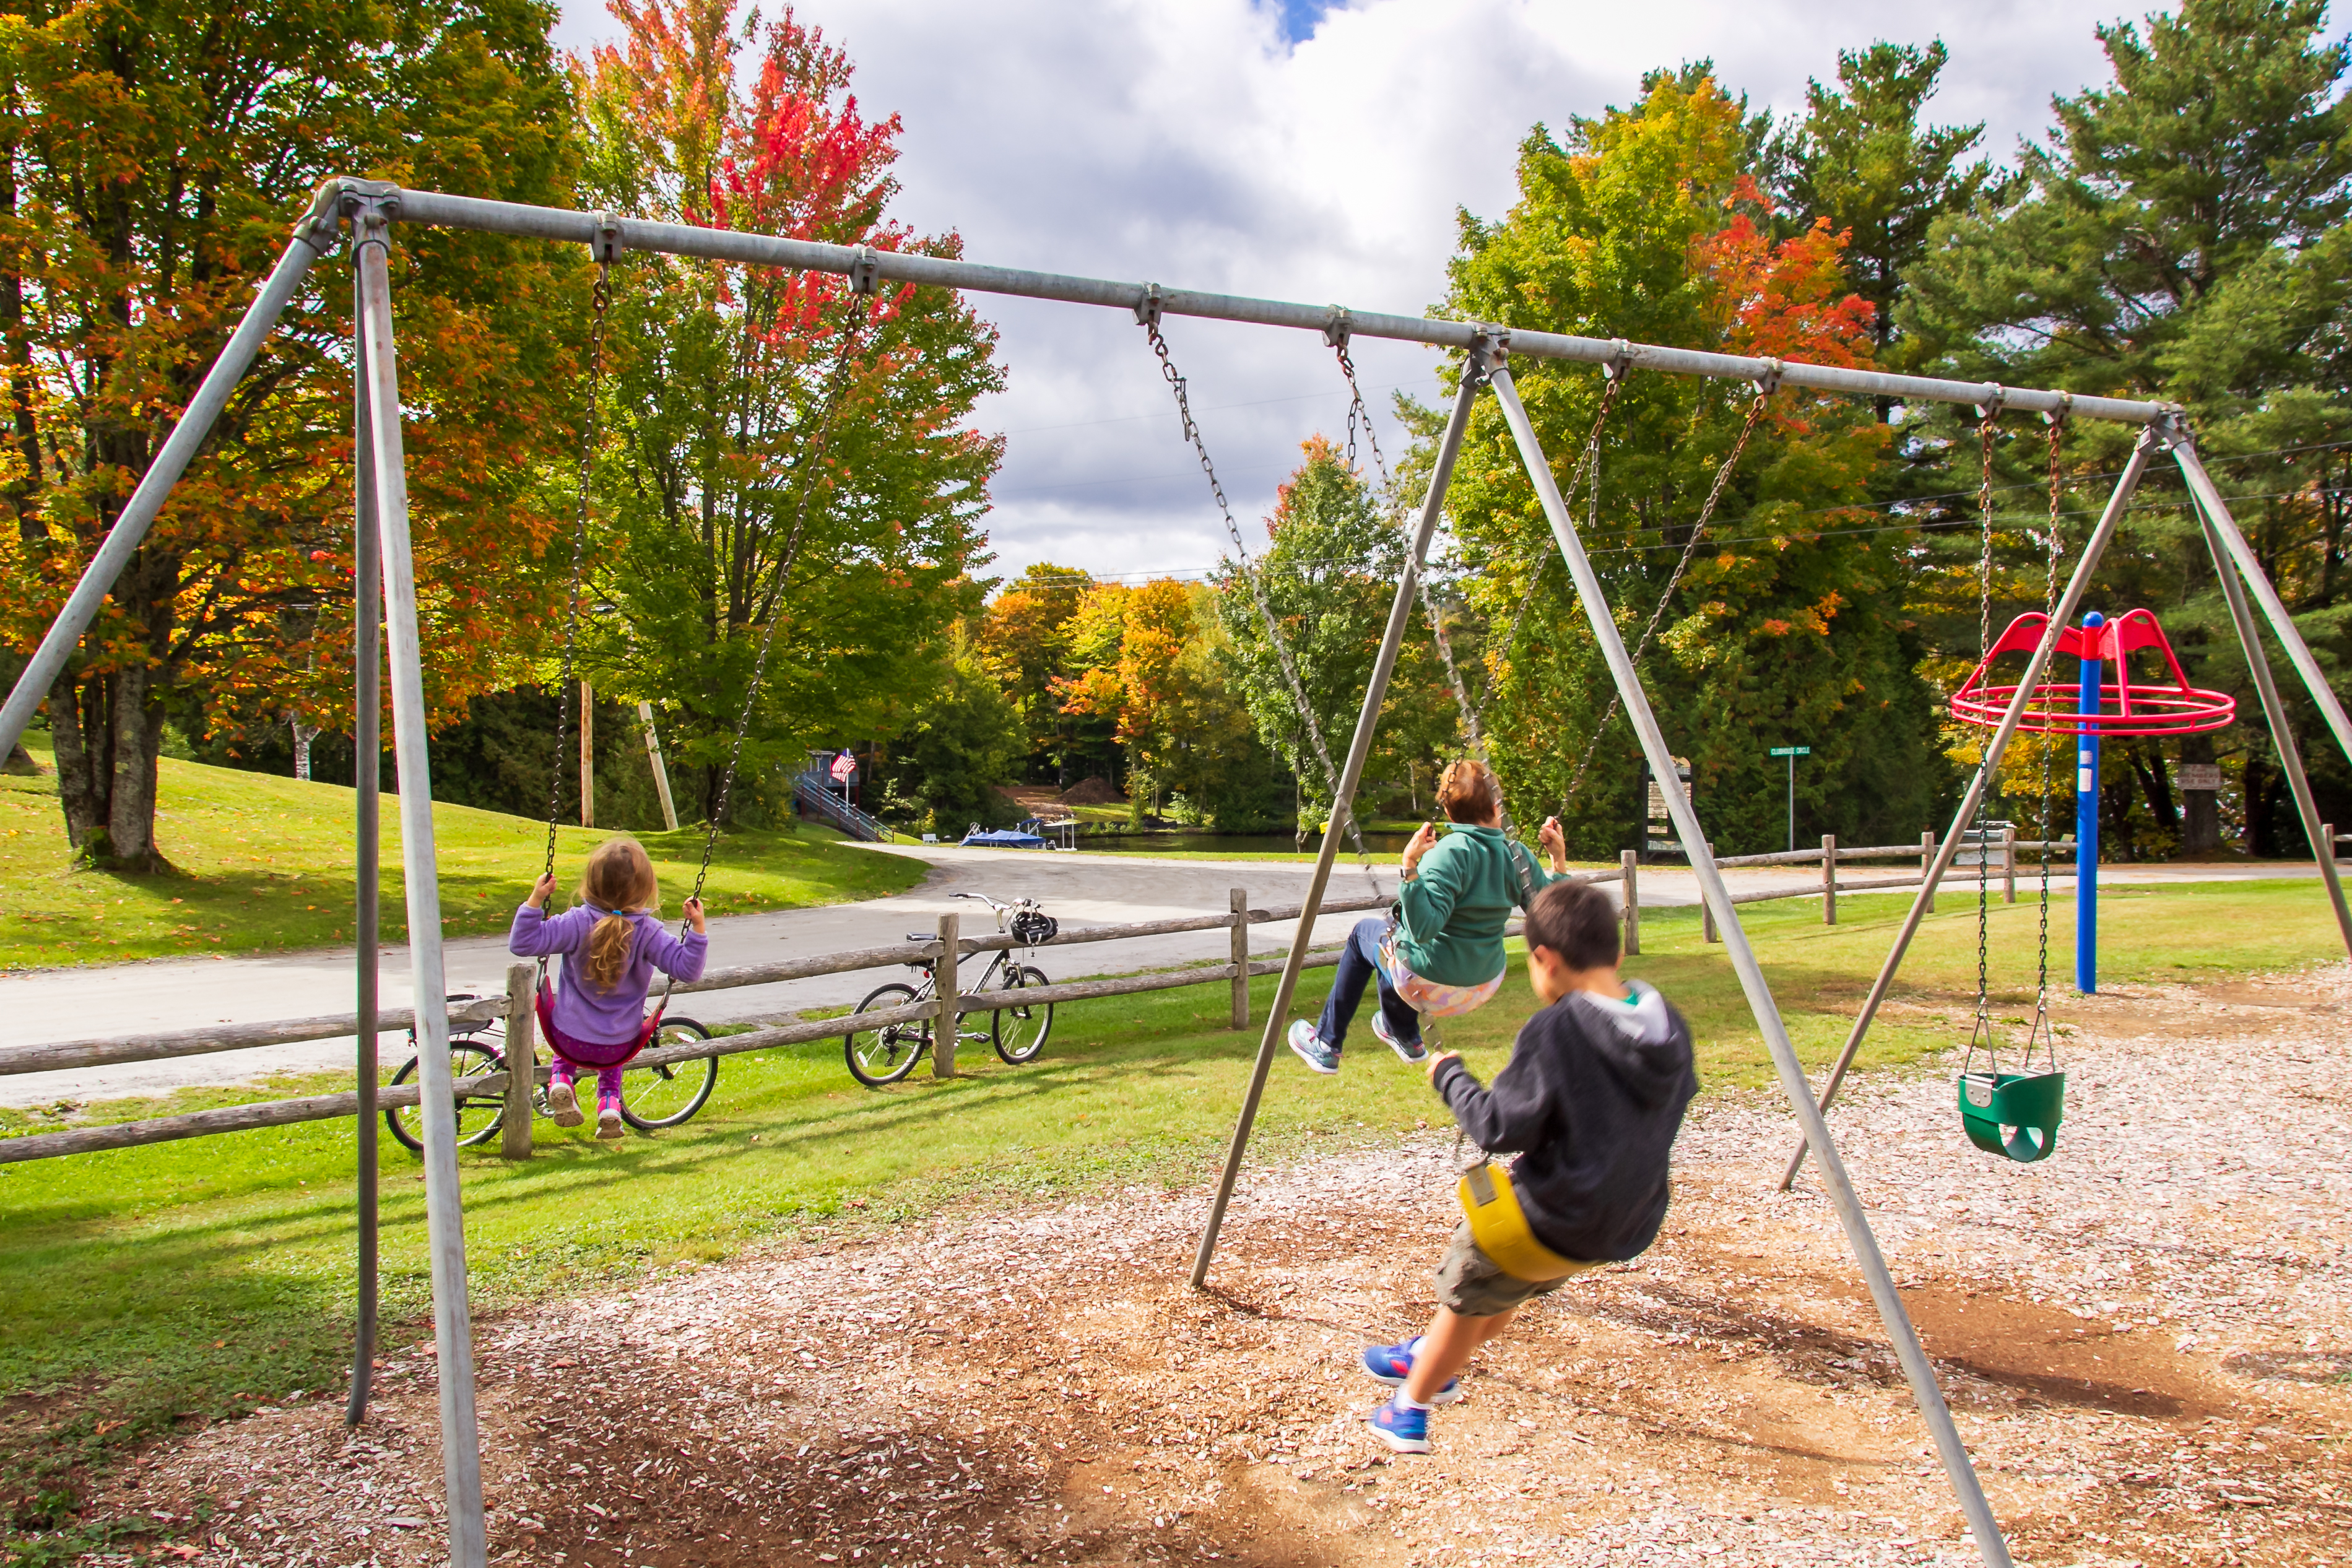 Children in a playground | Source: Shutterstock